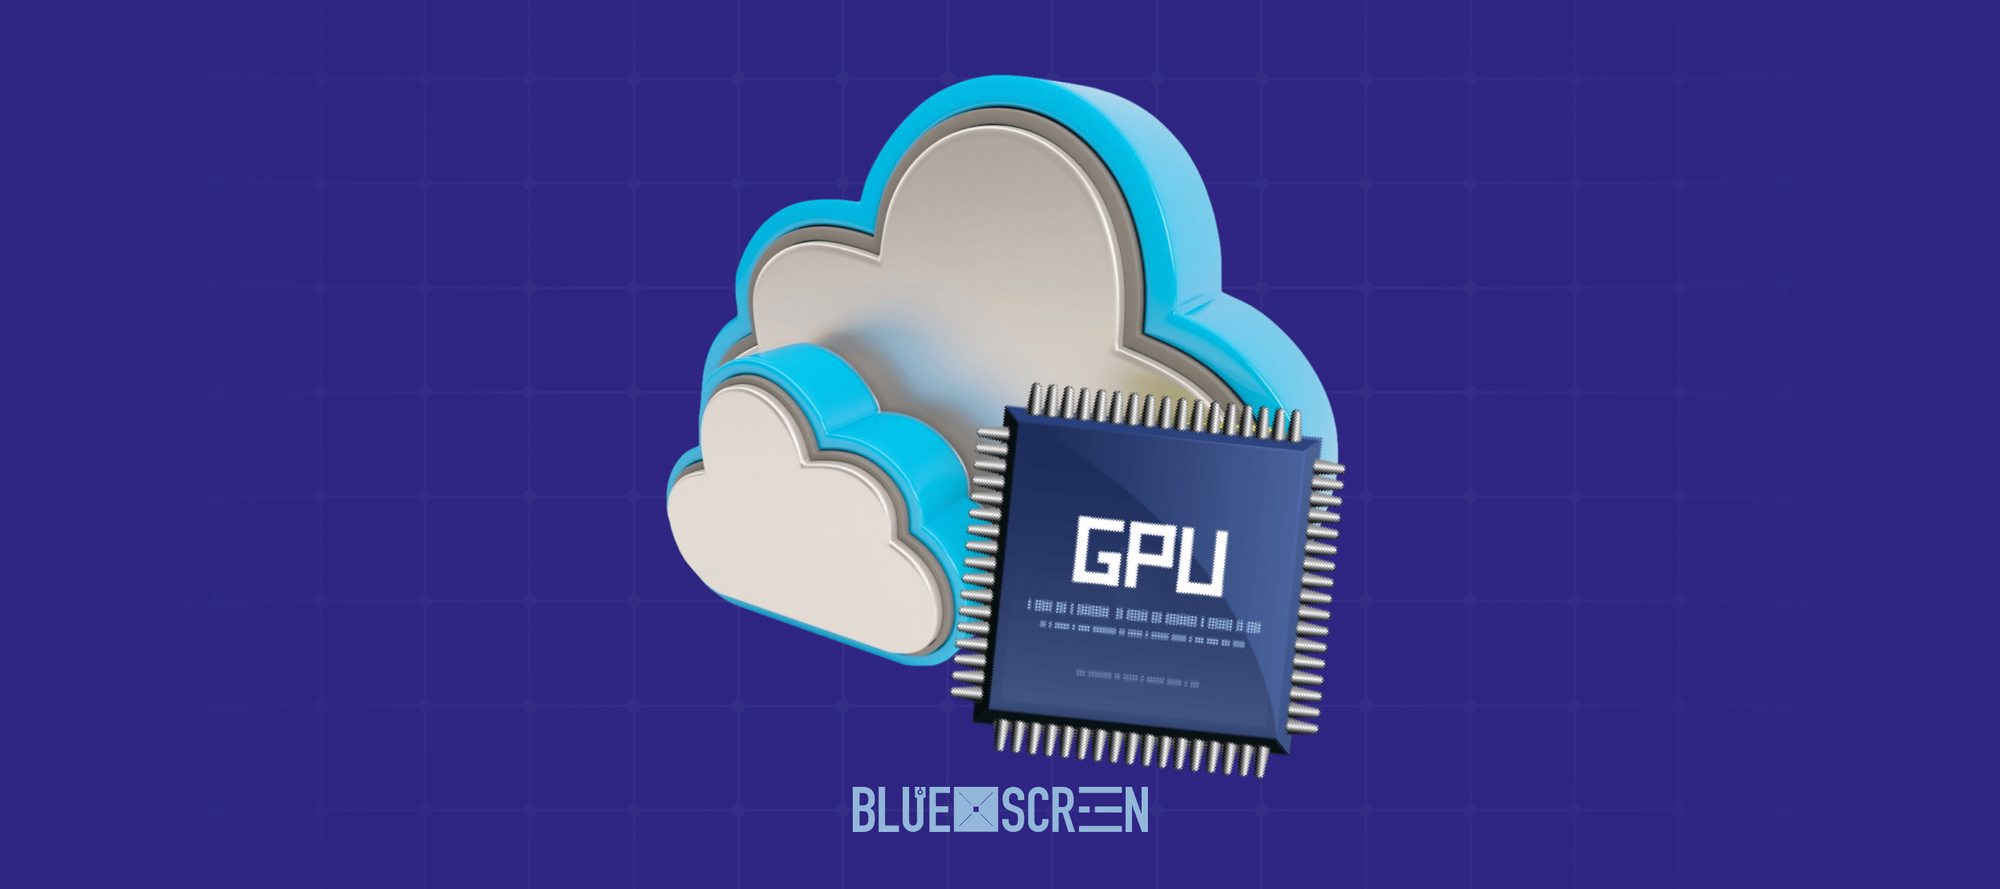 Казахстанские компании чаще используют облачные серверы с GPU